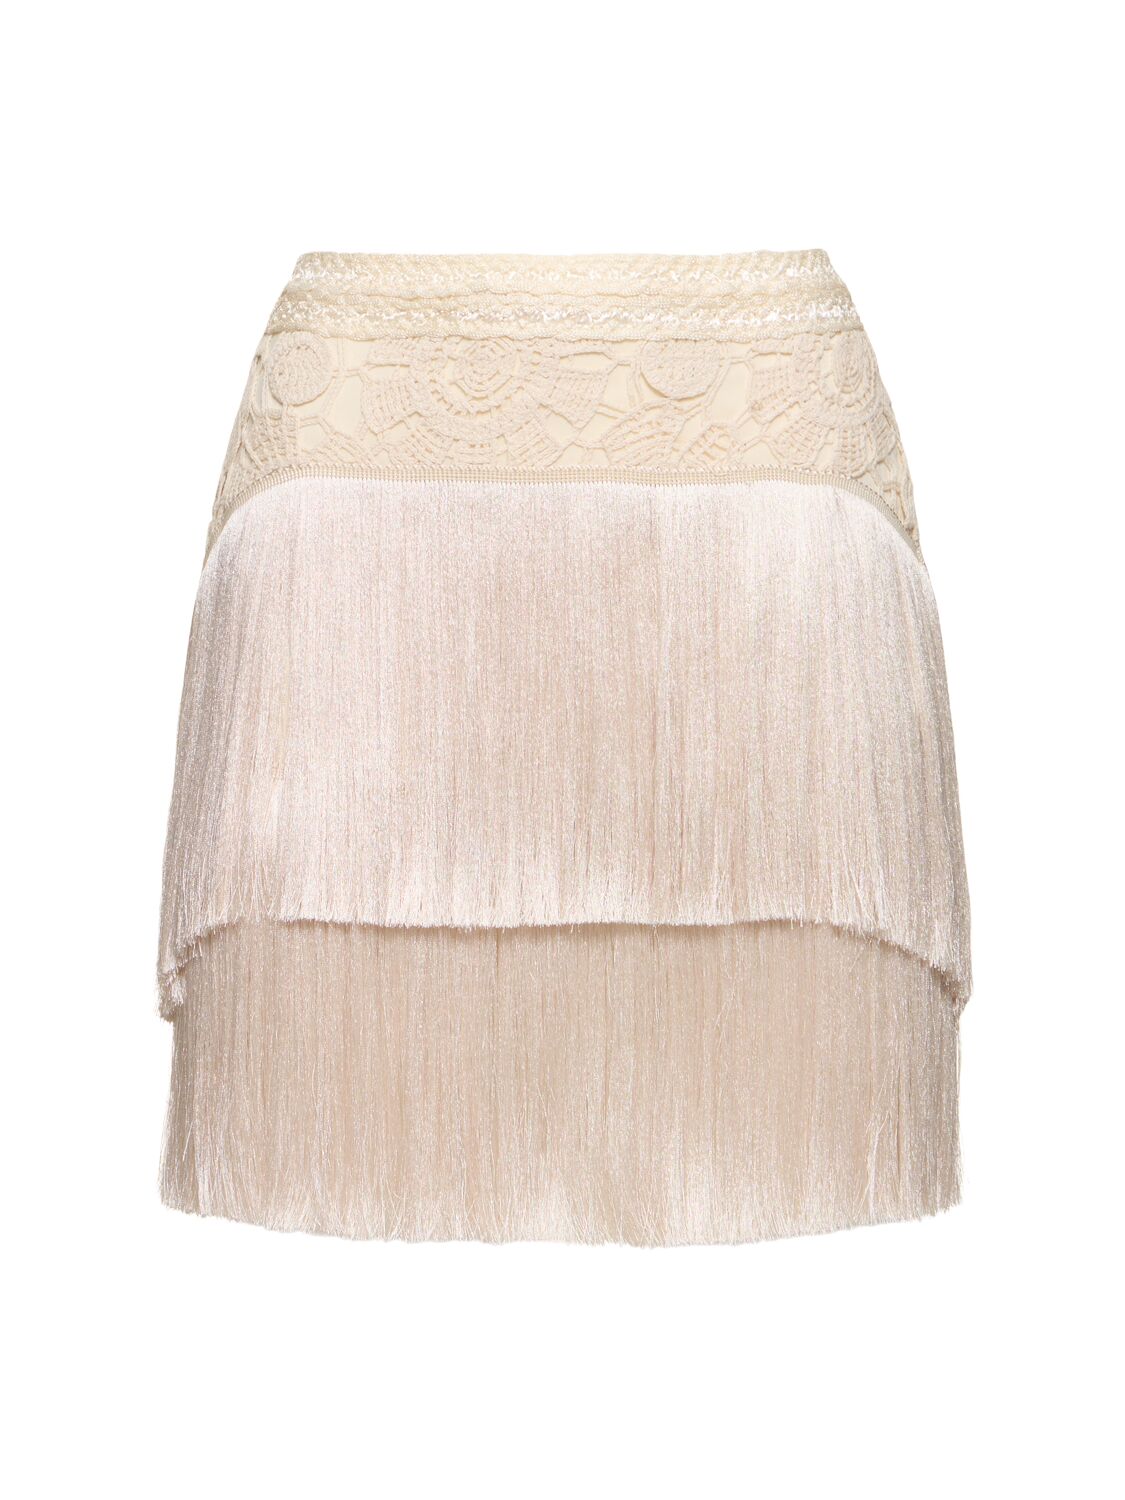 Image of Crochet Fringed Mini Skirt